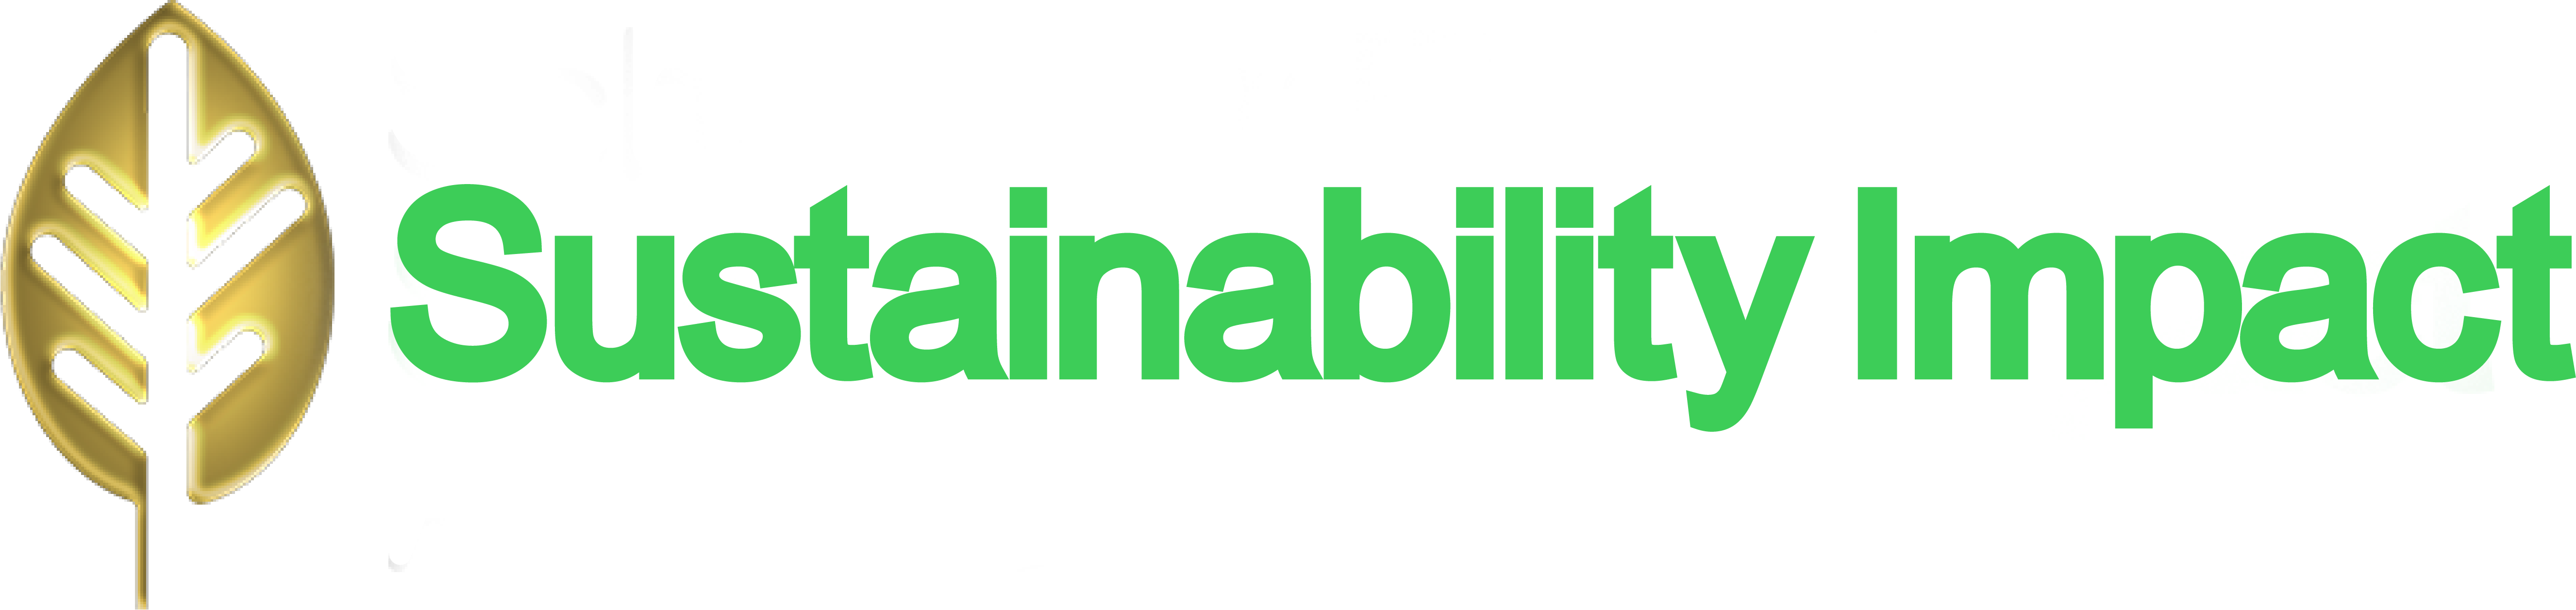 Sustainability Impact Awards logo white 2ab56